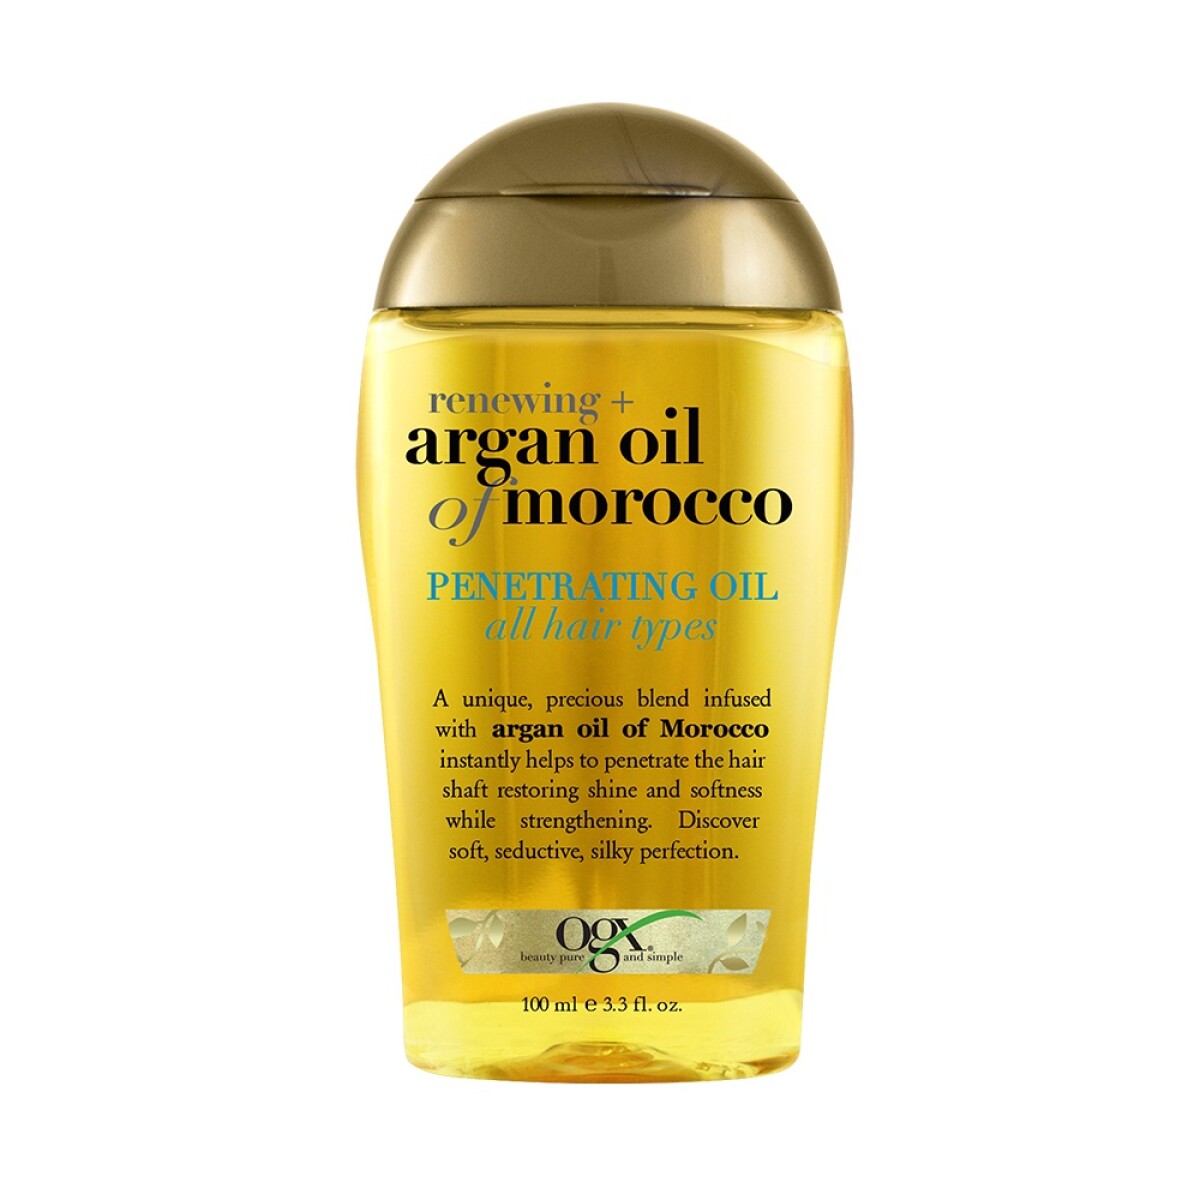 Ogx Argan Oil Of Morocco Penetrating Oil 